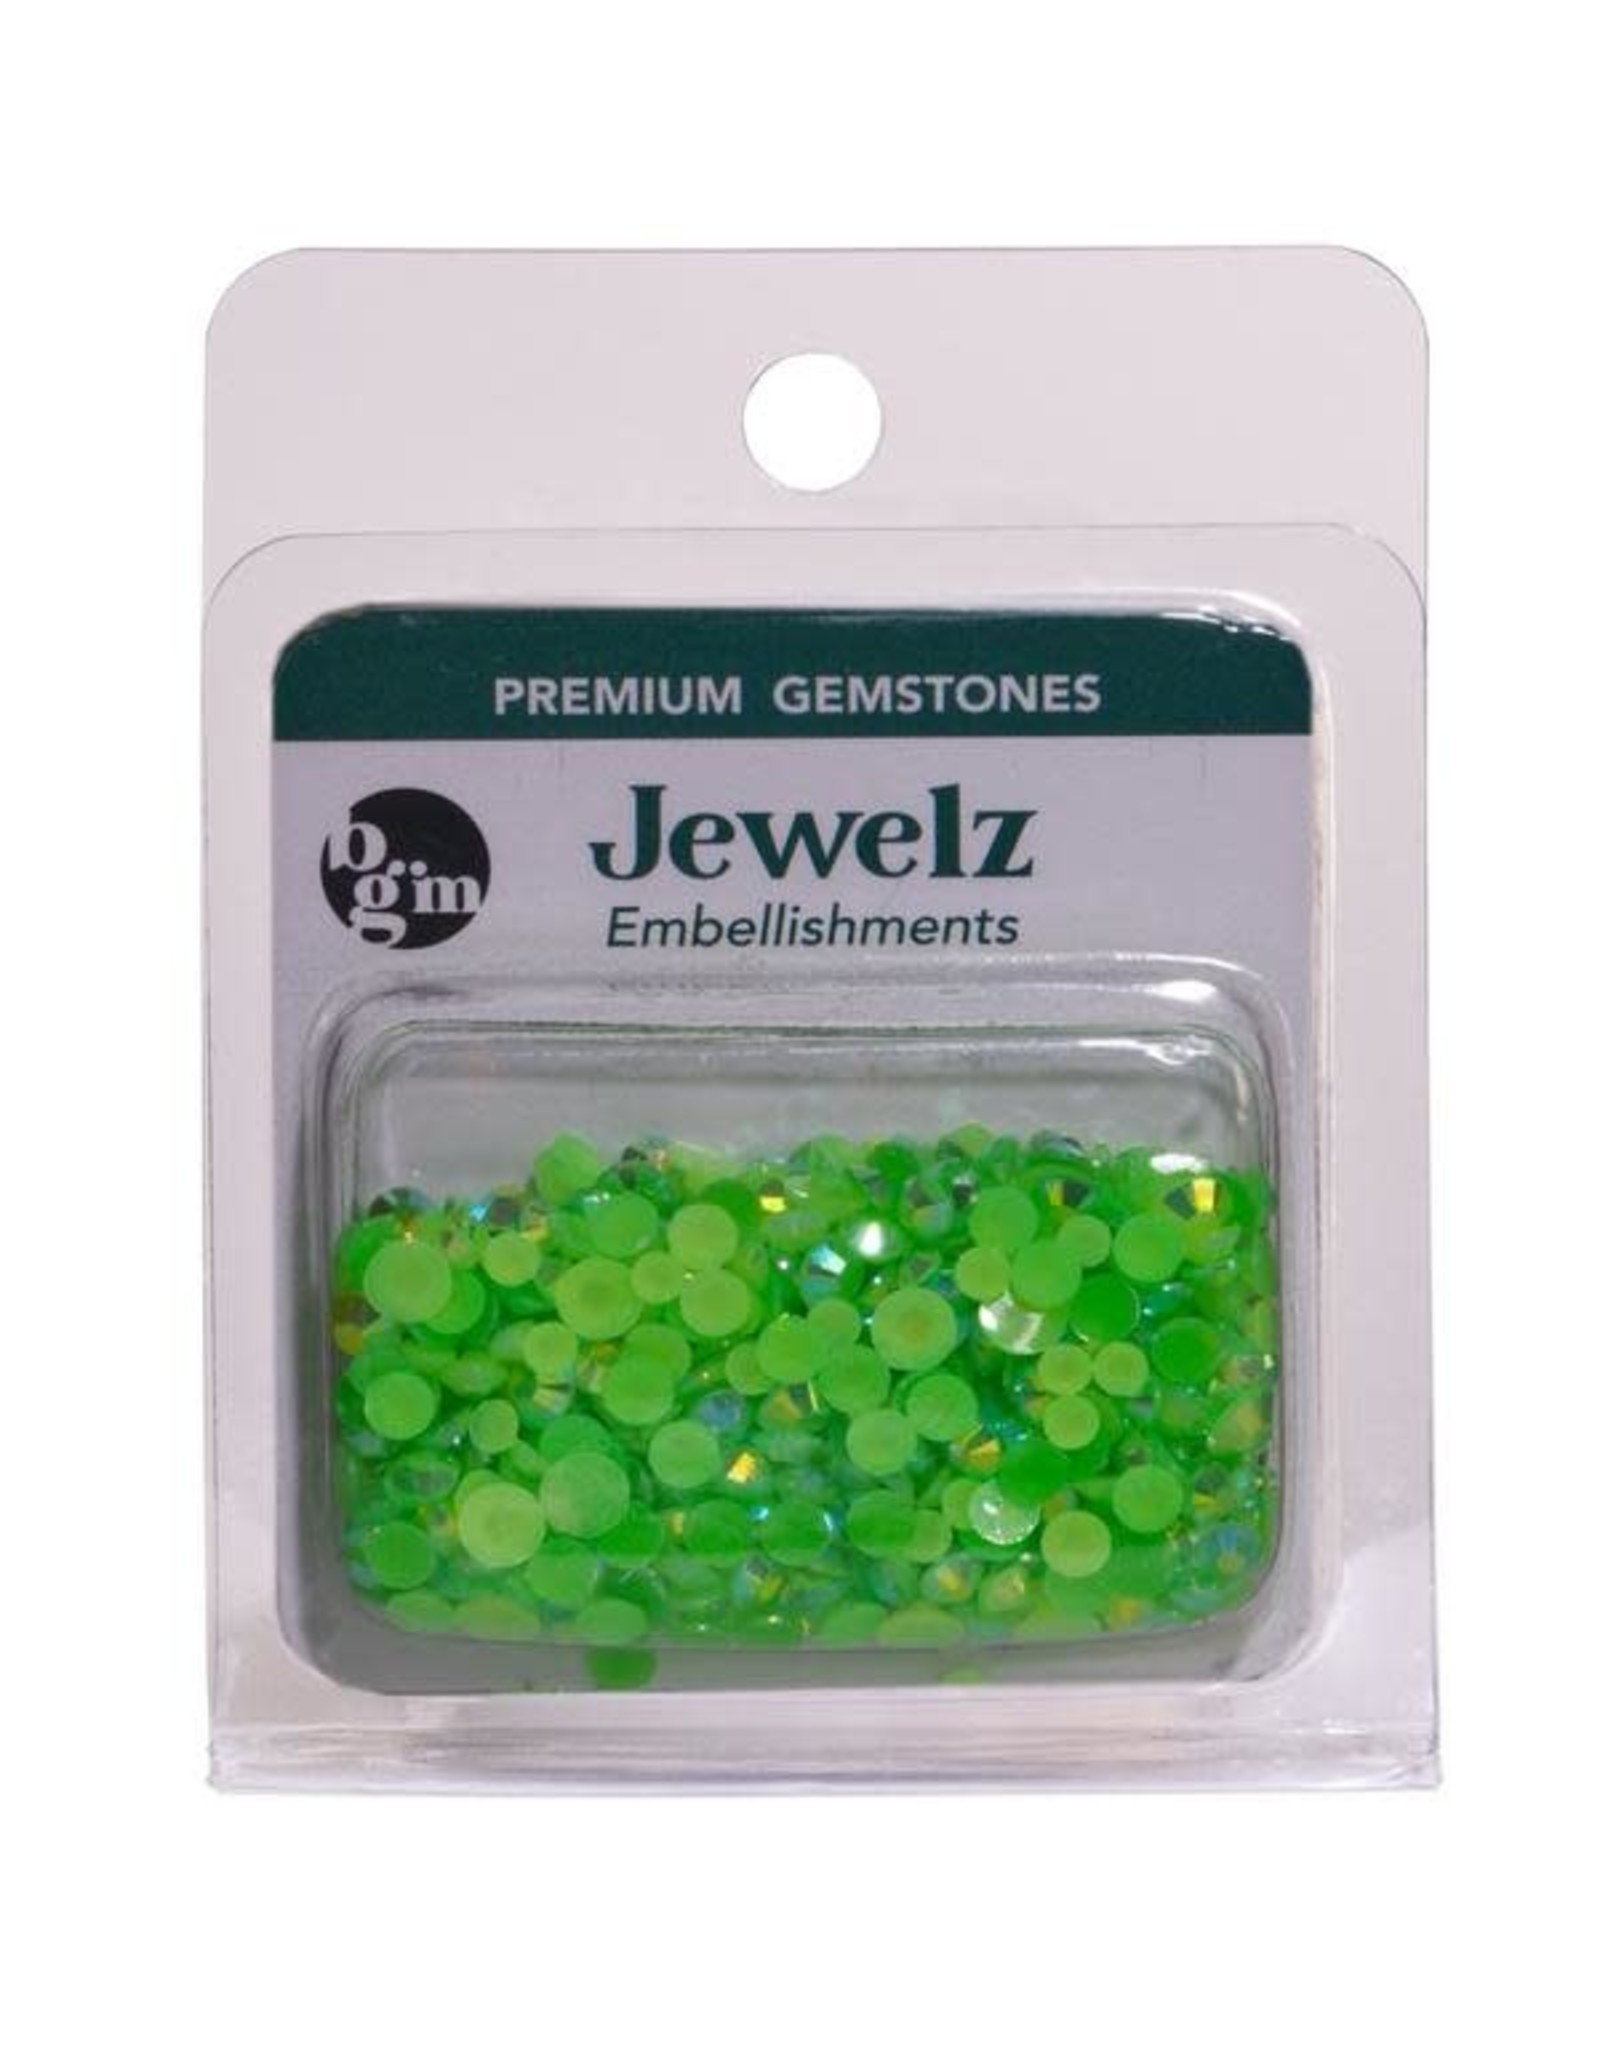 Buttons Galore & More Jewelz- Peridot